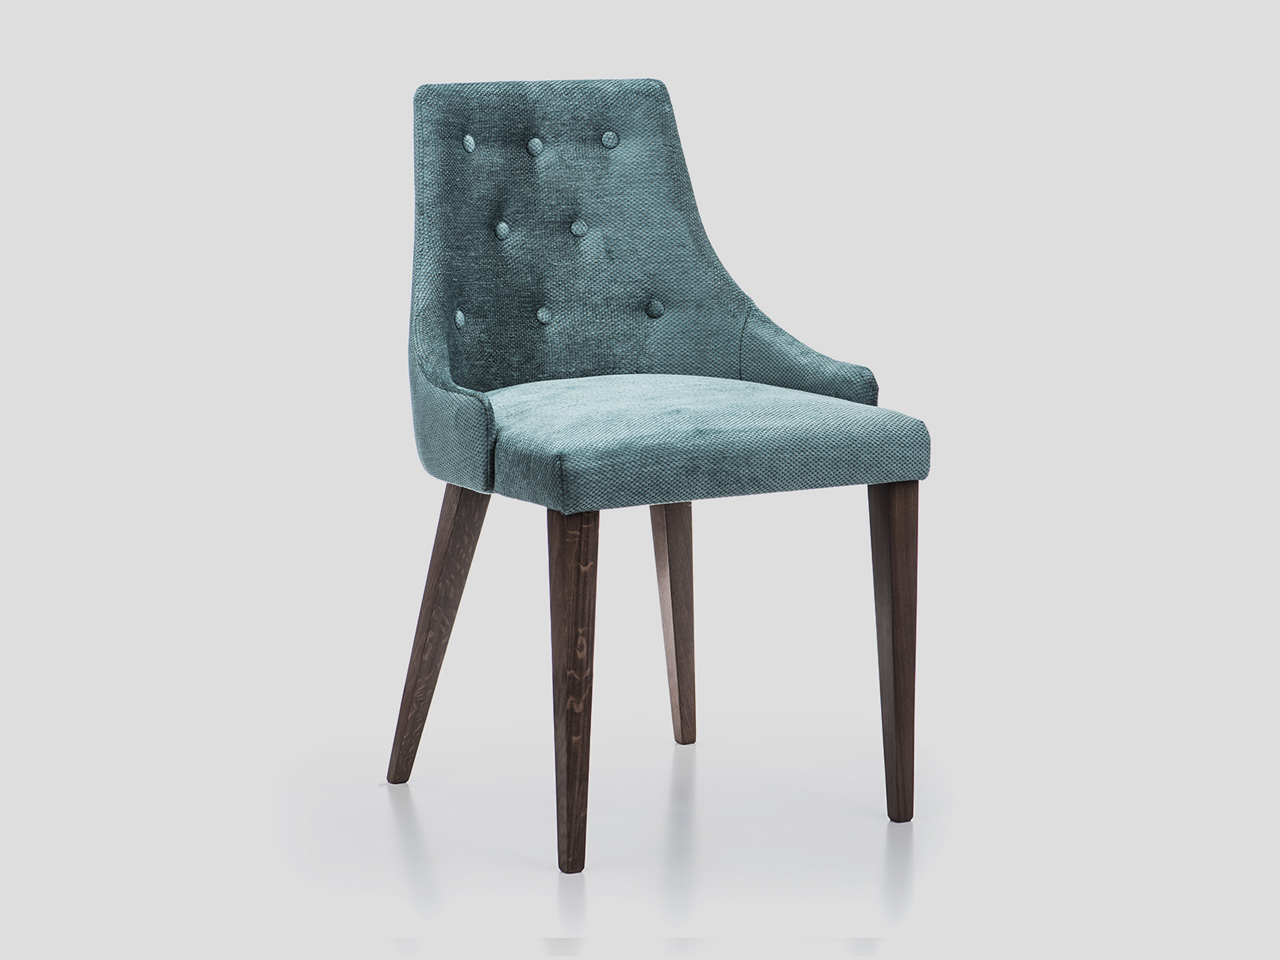 Moderna tapacirana stolica za ugostiteljstvo sa dugmicima i drvenim nogama SOFIA Linea Milanovic